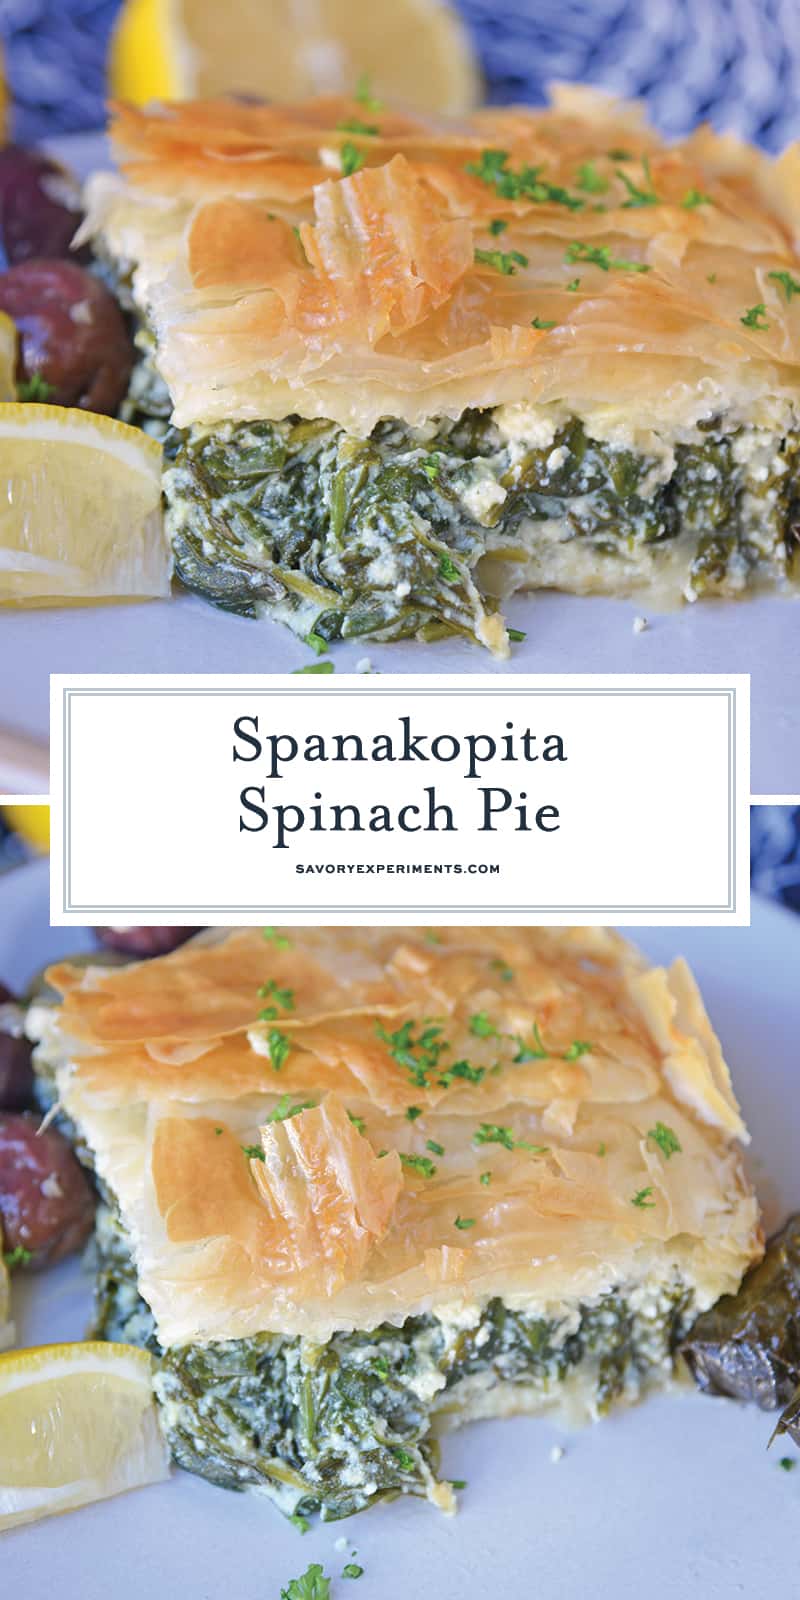 Spanakopita Spinach Pie for Pinterest